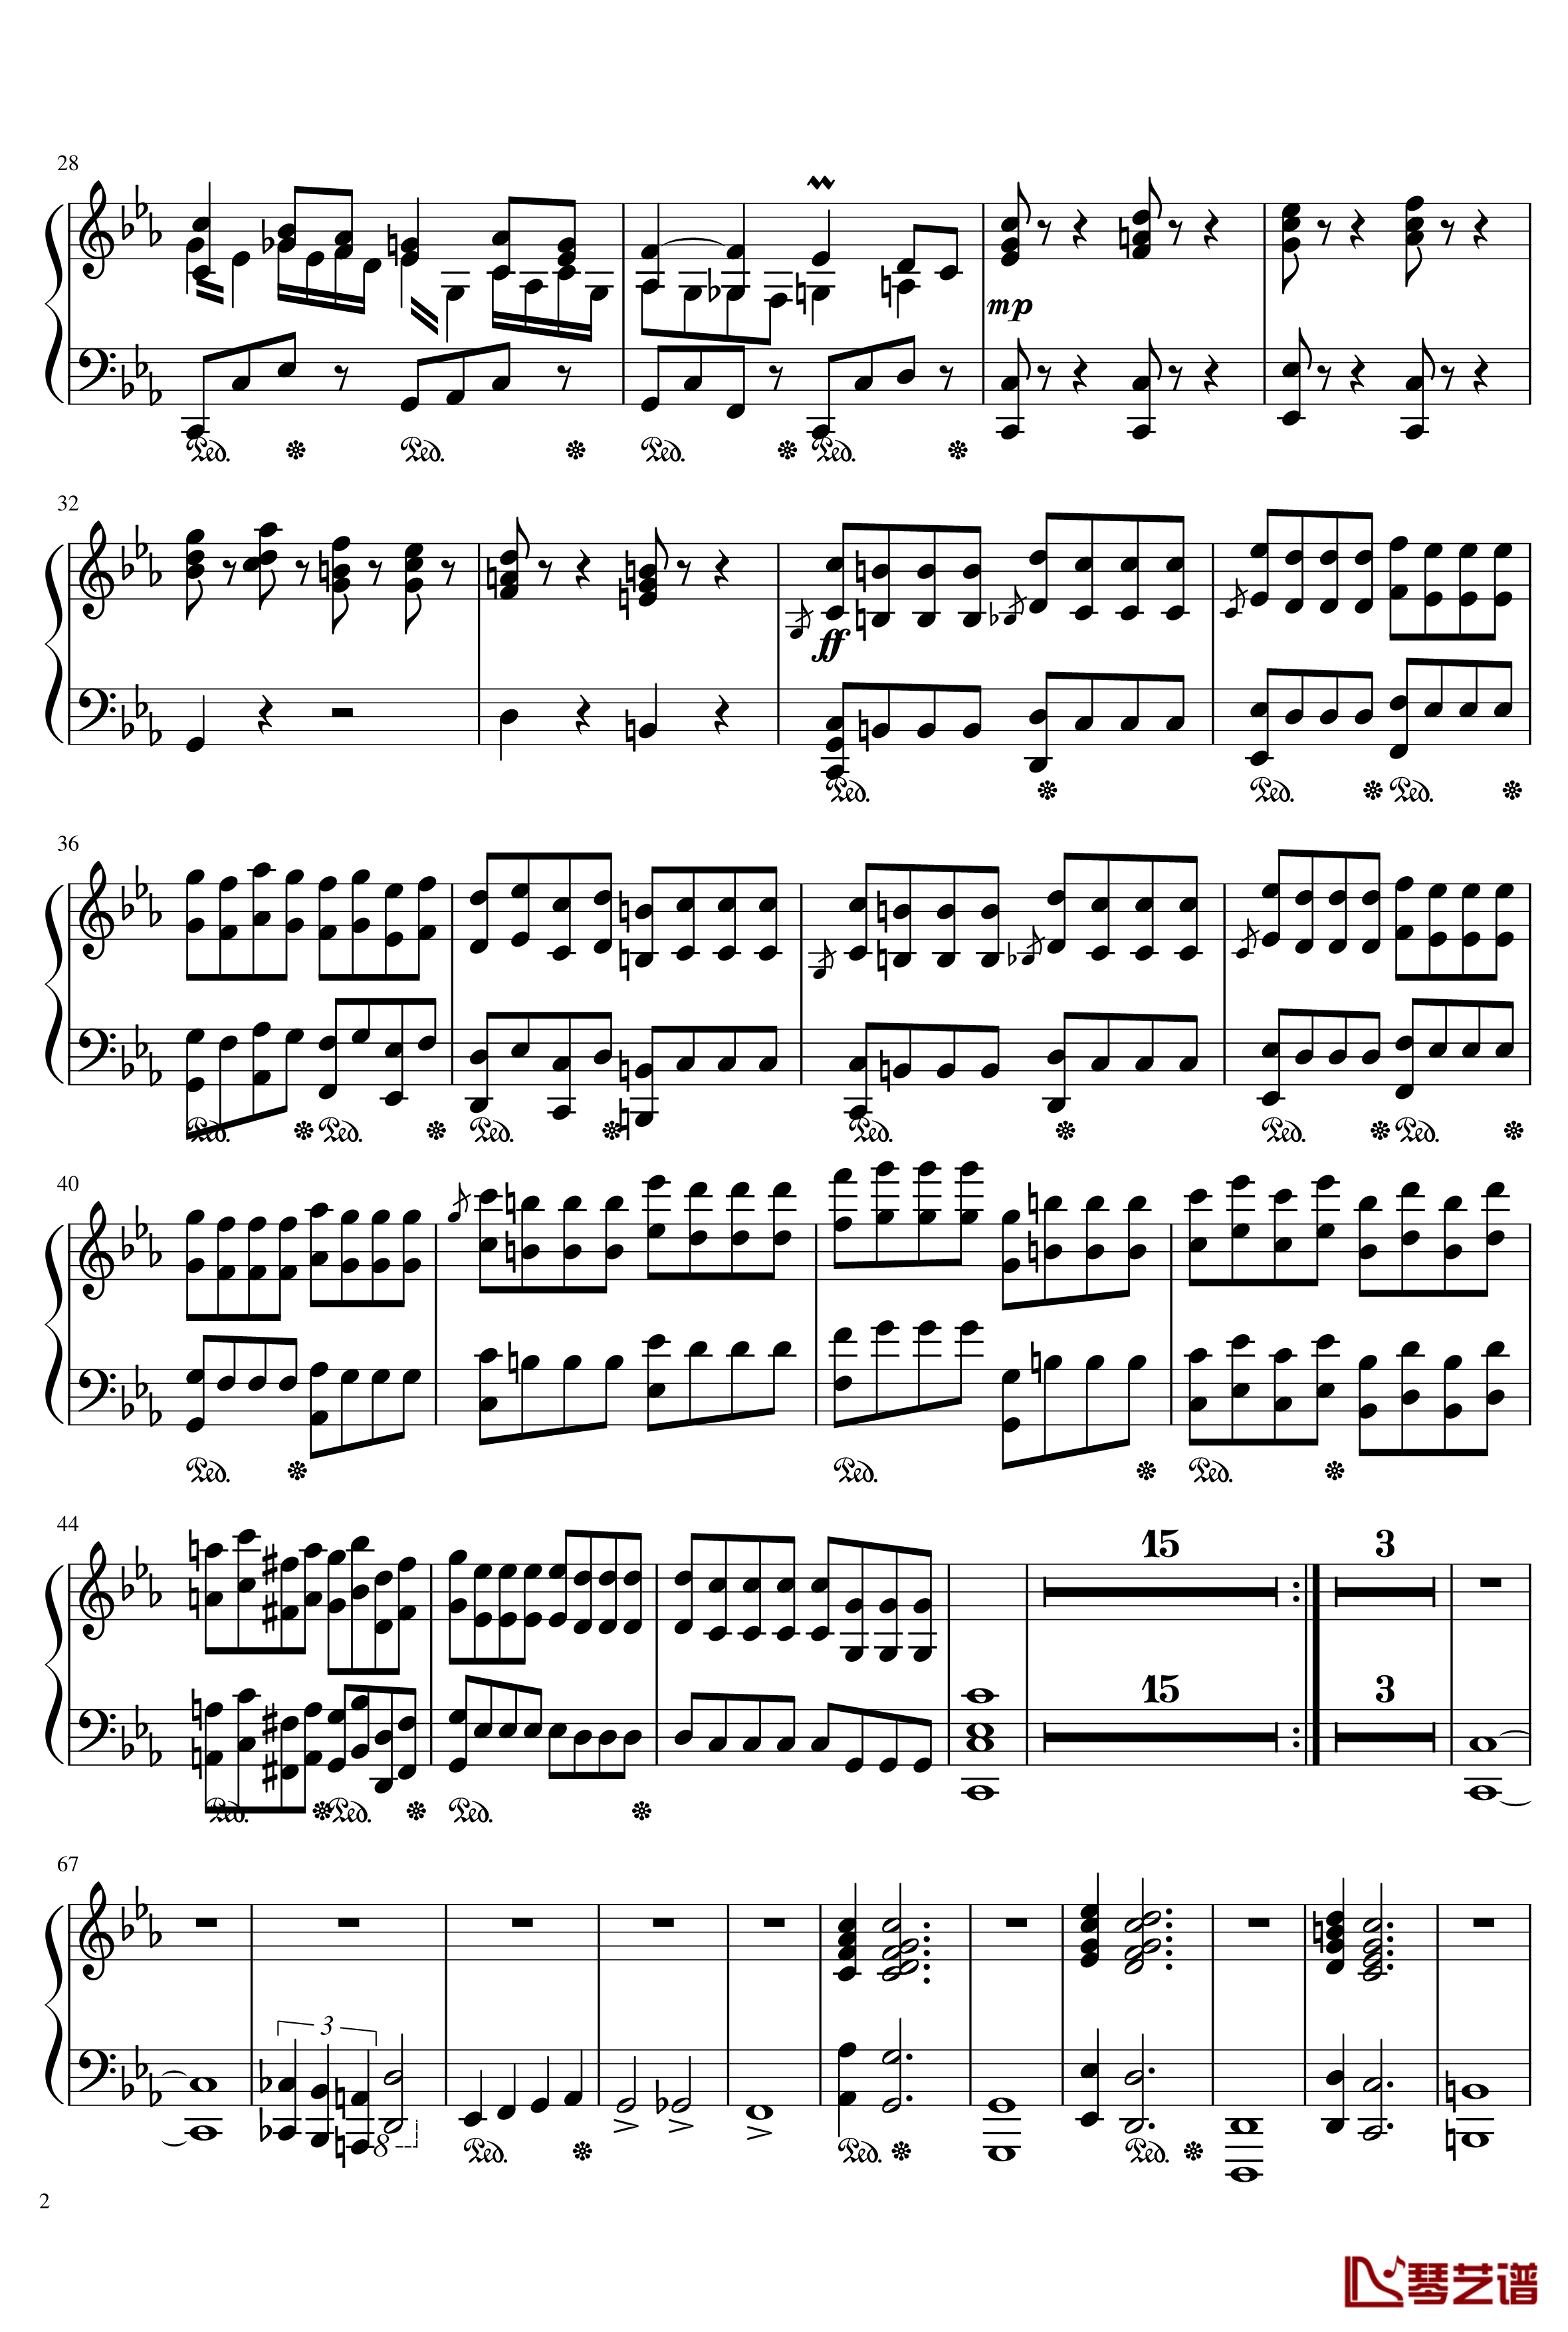 钢琴协奏曲第一乐章钢琴谱-Ice-KUN